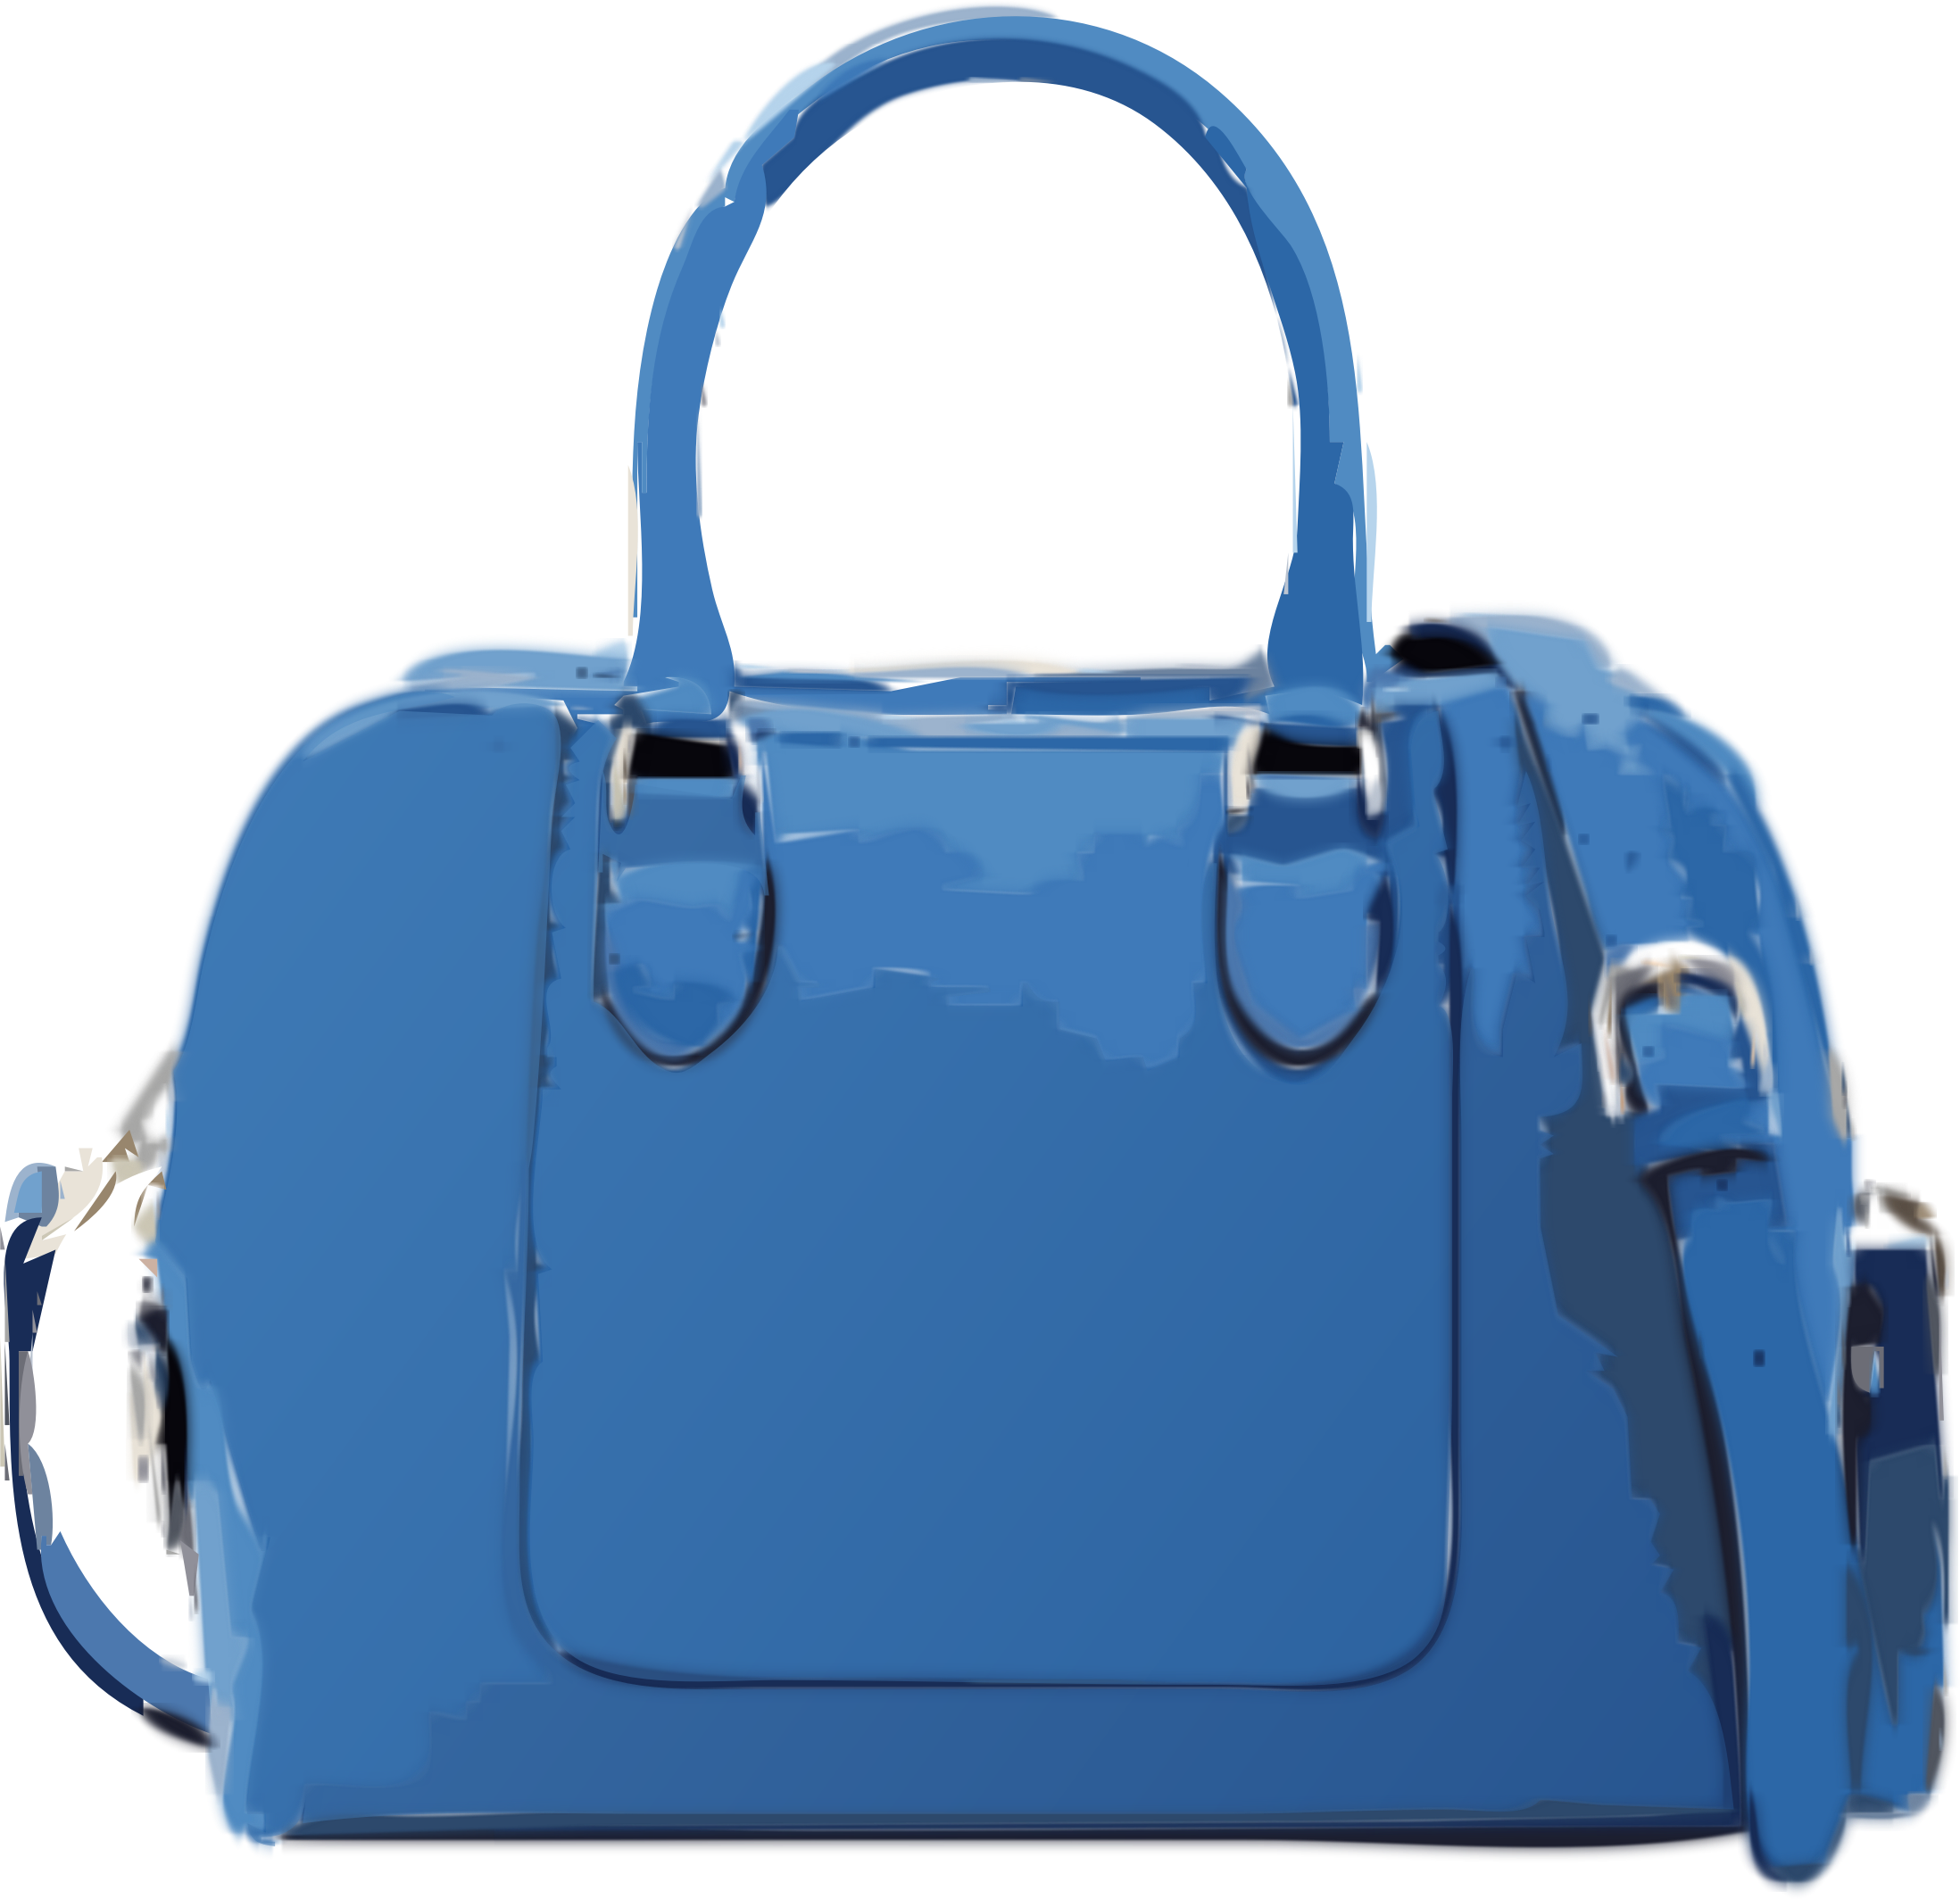 Fascinating Handbag Images Clip Art Medium Size - Blue Hand Bag Clipart (2196x2128)